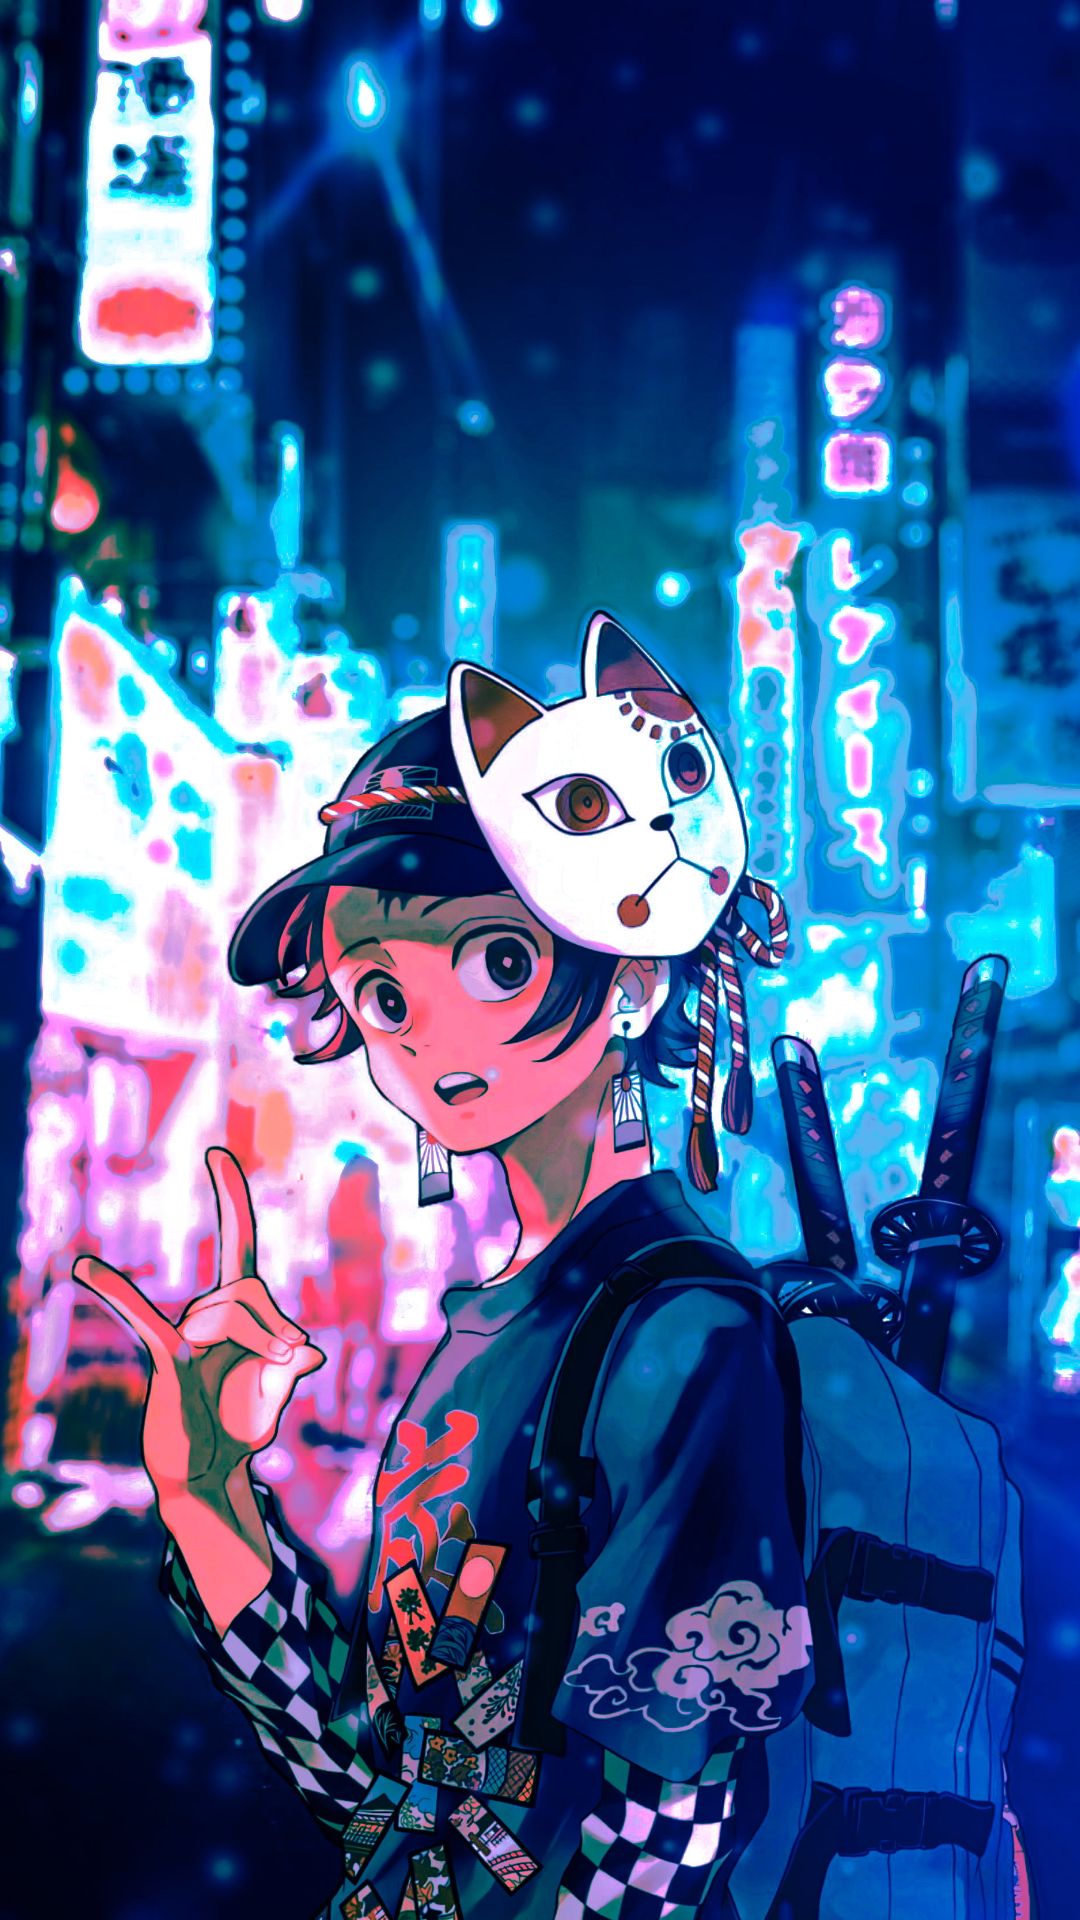 Cute iPhone Wallpaper on Twitter Anime iPhone Home Screen Wallpaper  httpstcoA0Sw3ltj81 httpstcoLJPAr37tUt  Twitter